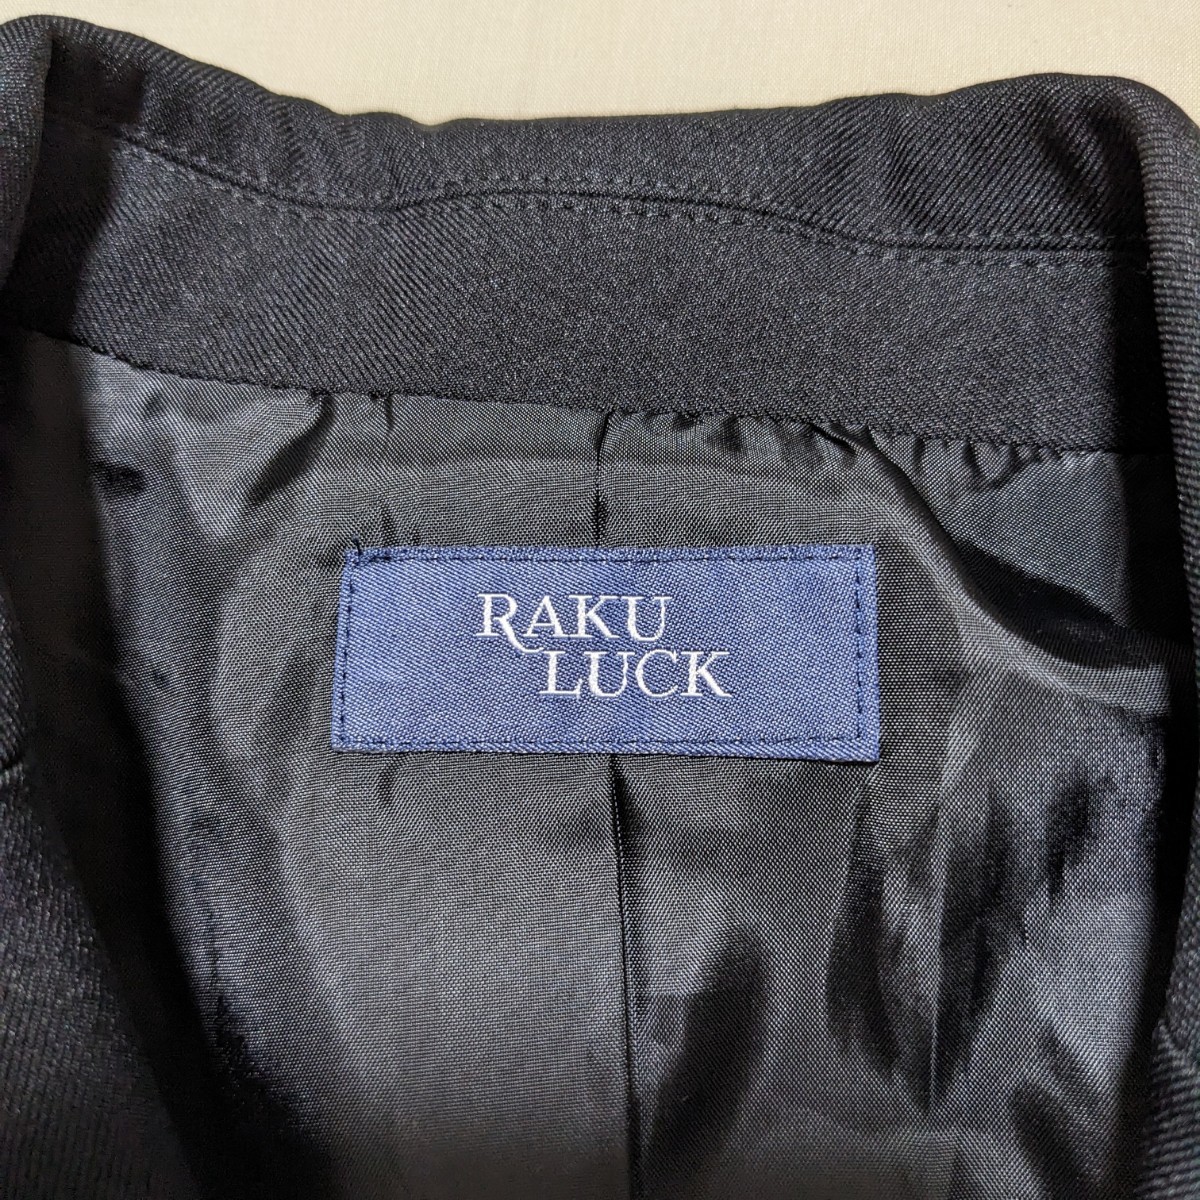 +FT40 RAKU LUCK フォーマル レディース 9号 9AR スーツ 上下 3点 セットスカート パンツ 黒 無地 ビジネス セレモニー_画像10